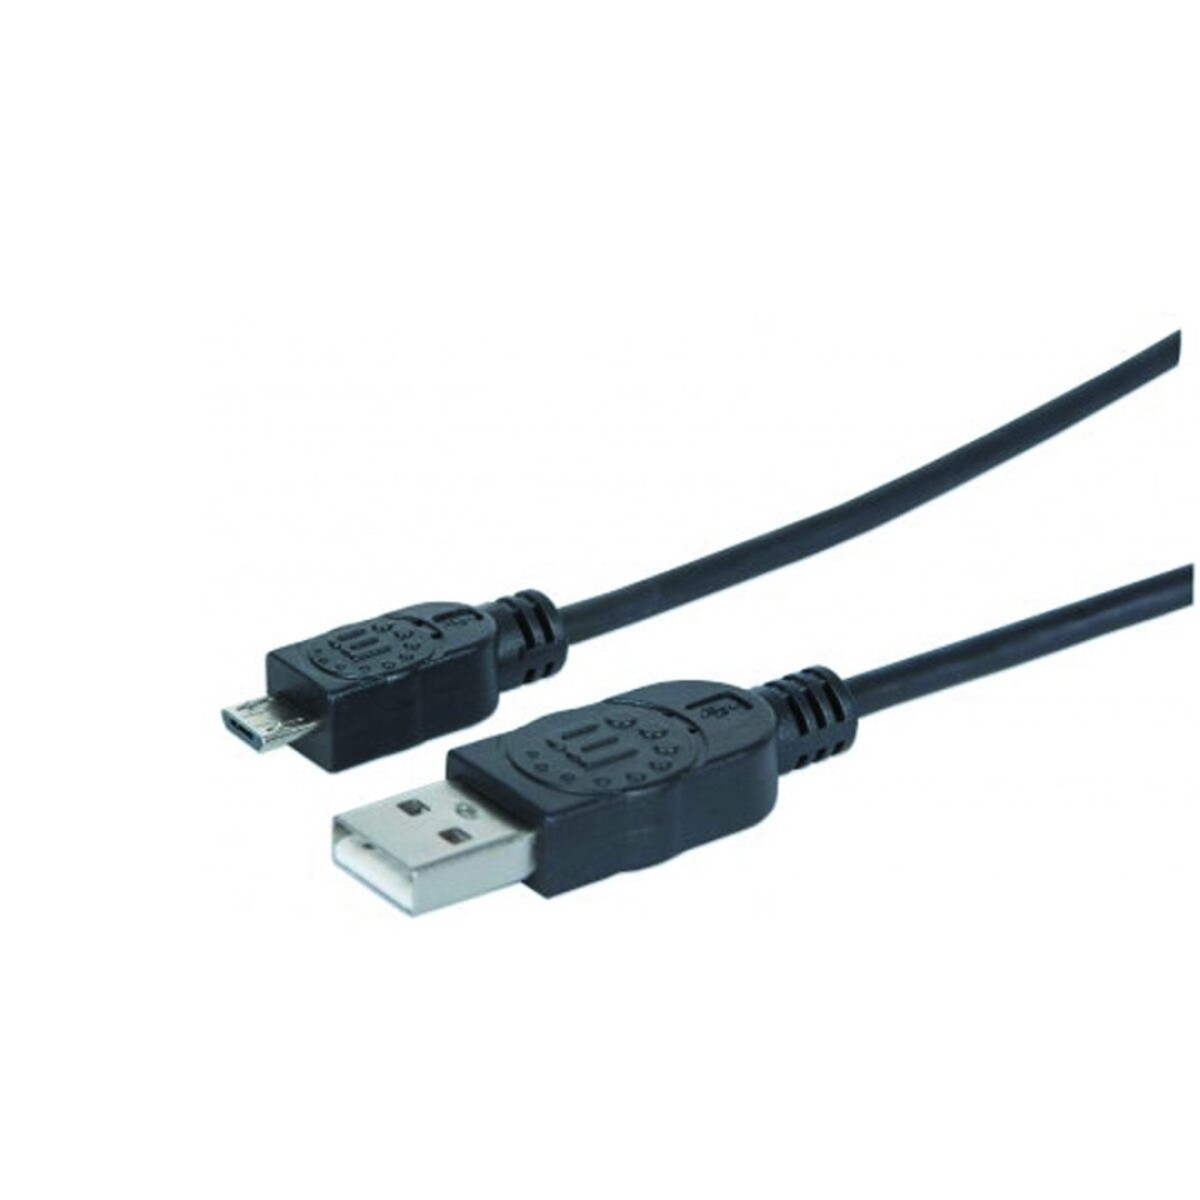 Cable USB 2.0 a MicroB macho/macho 1.0 mts Manhattan - 3628 